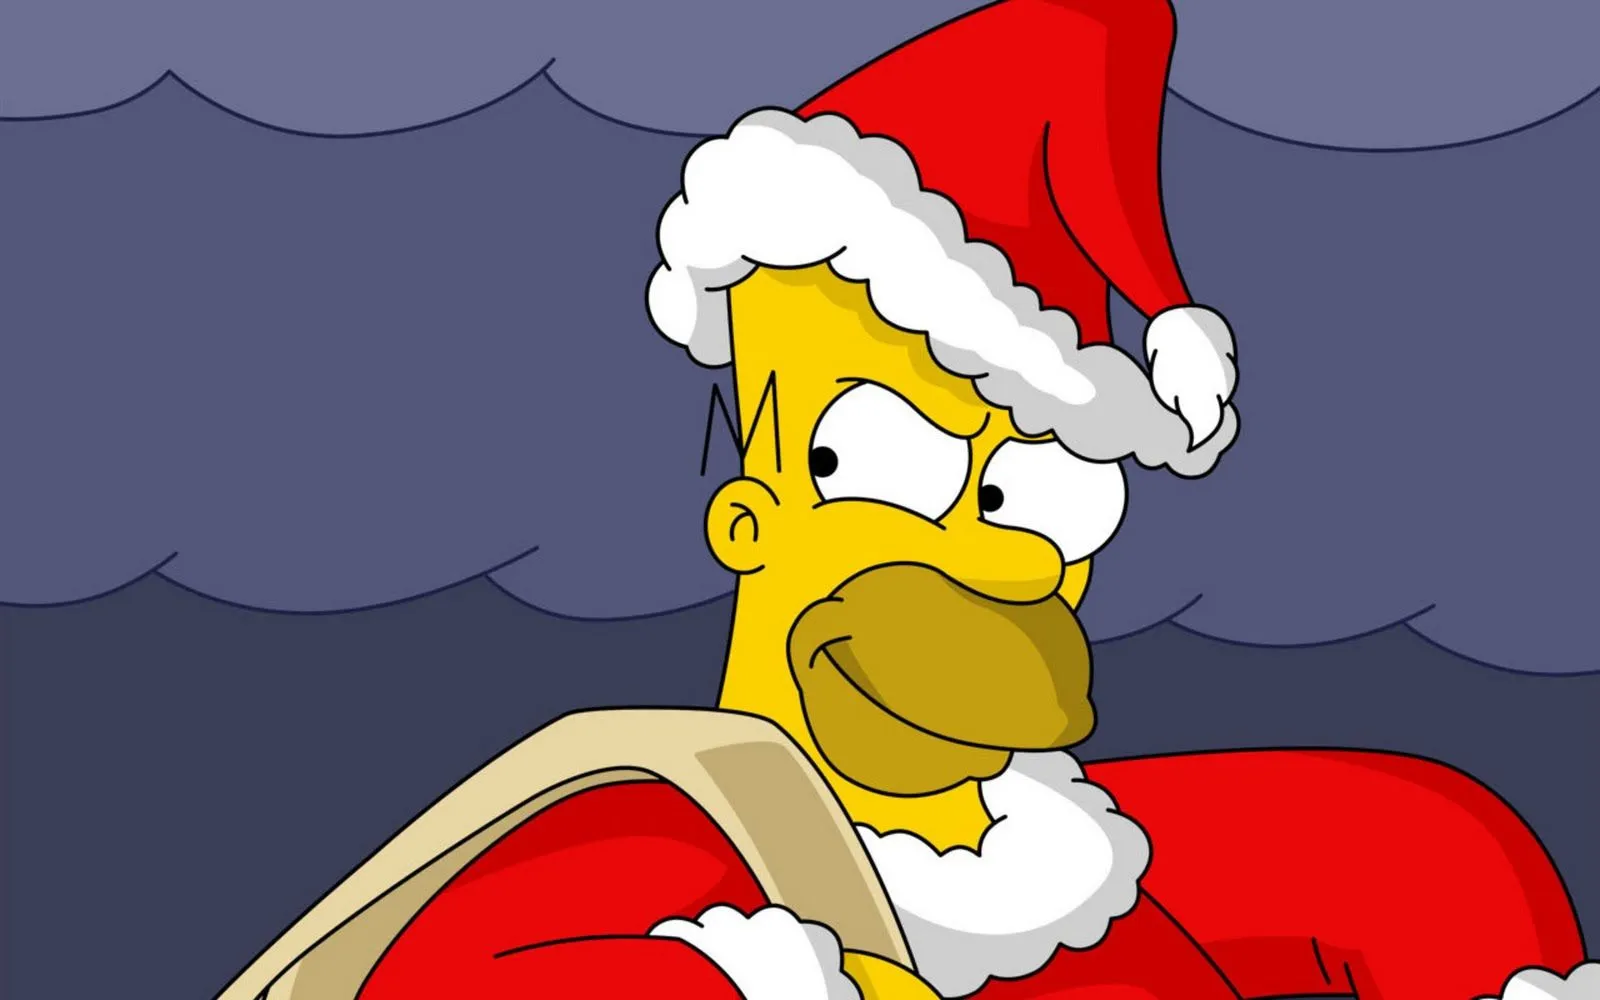  ... - Homer Simson - dibujos animados - Santa Claus - gorros - wallpaper